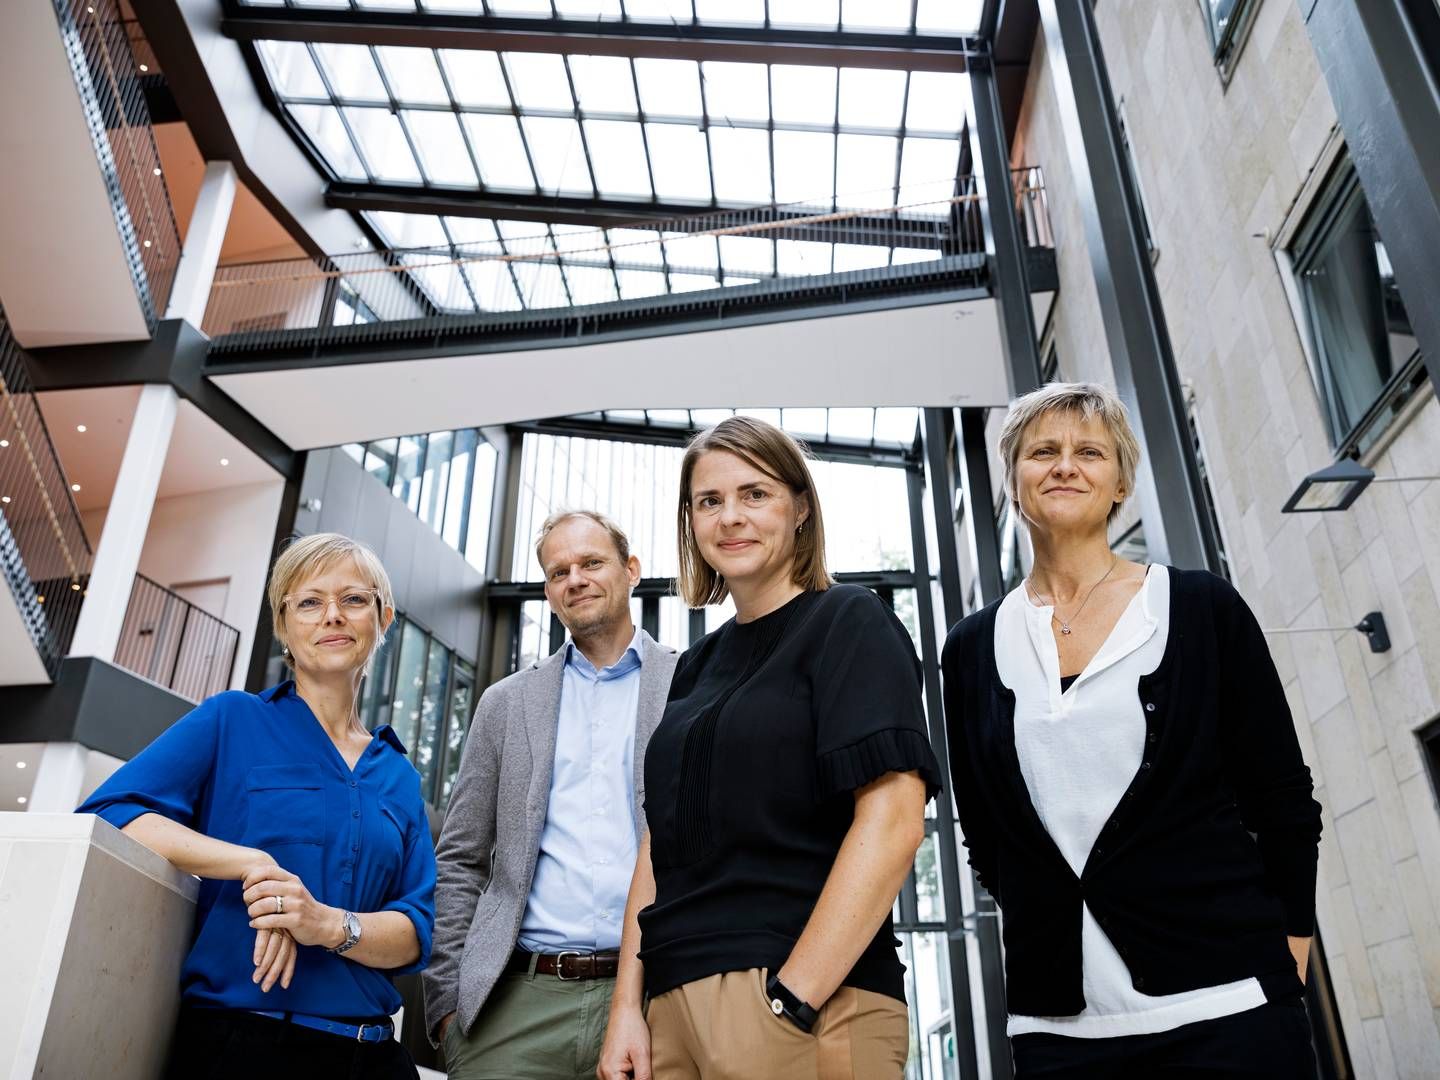 Stifterne af Ceremedy, fra venstre mod højre: Birgitte Kornum, Casper Tind Hansen (adm. direktør), Petrine Wellendorph og Bente Frølund | Photo: Ceremedy / Pr